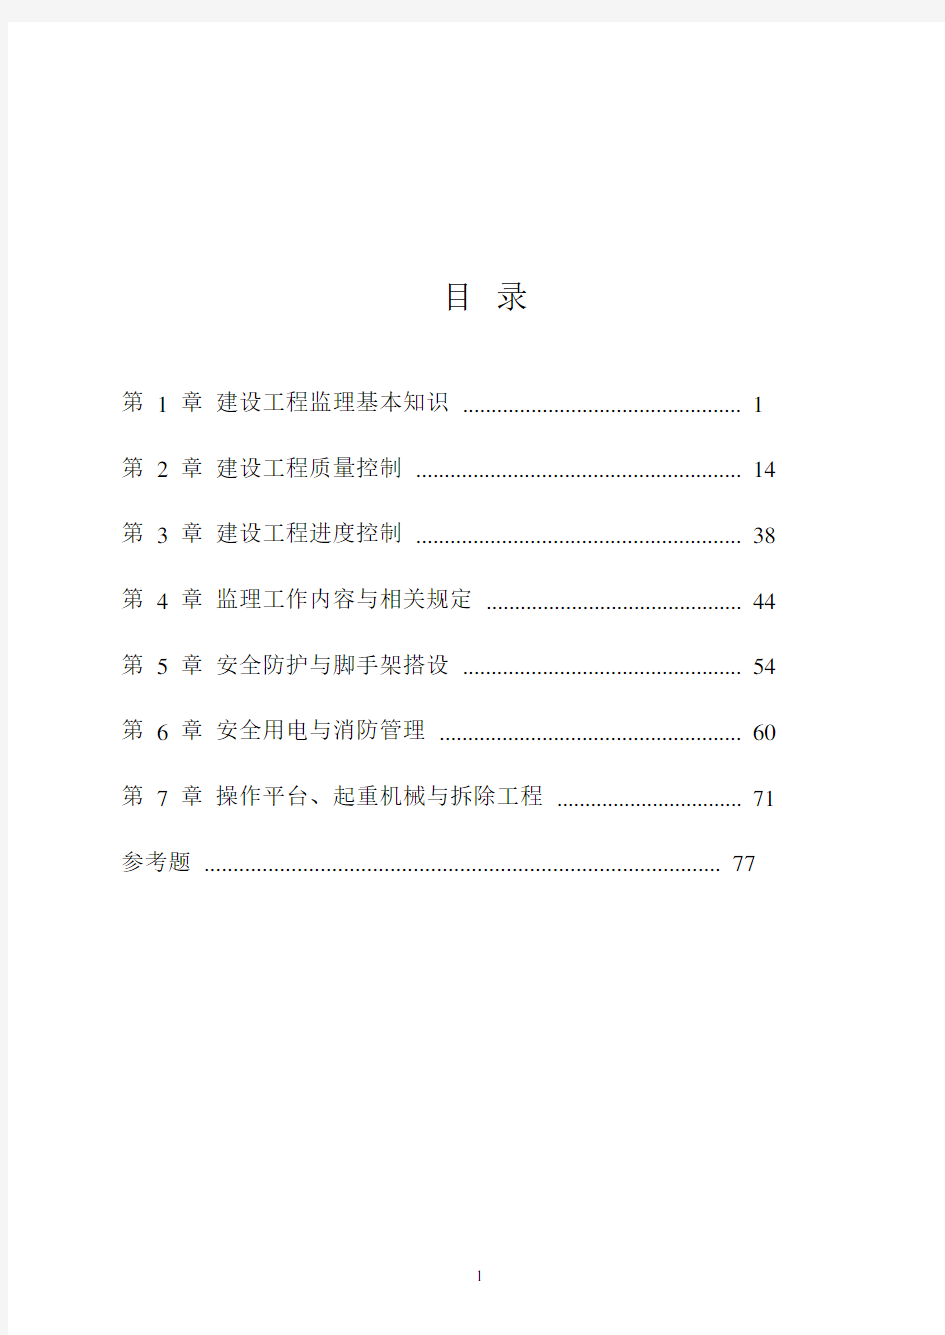 监理员培训教材(2020年10月整理).pdf